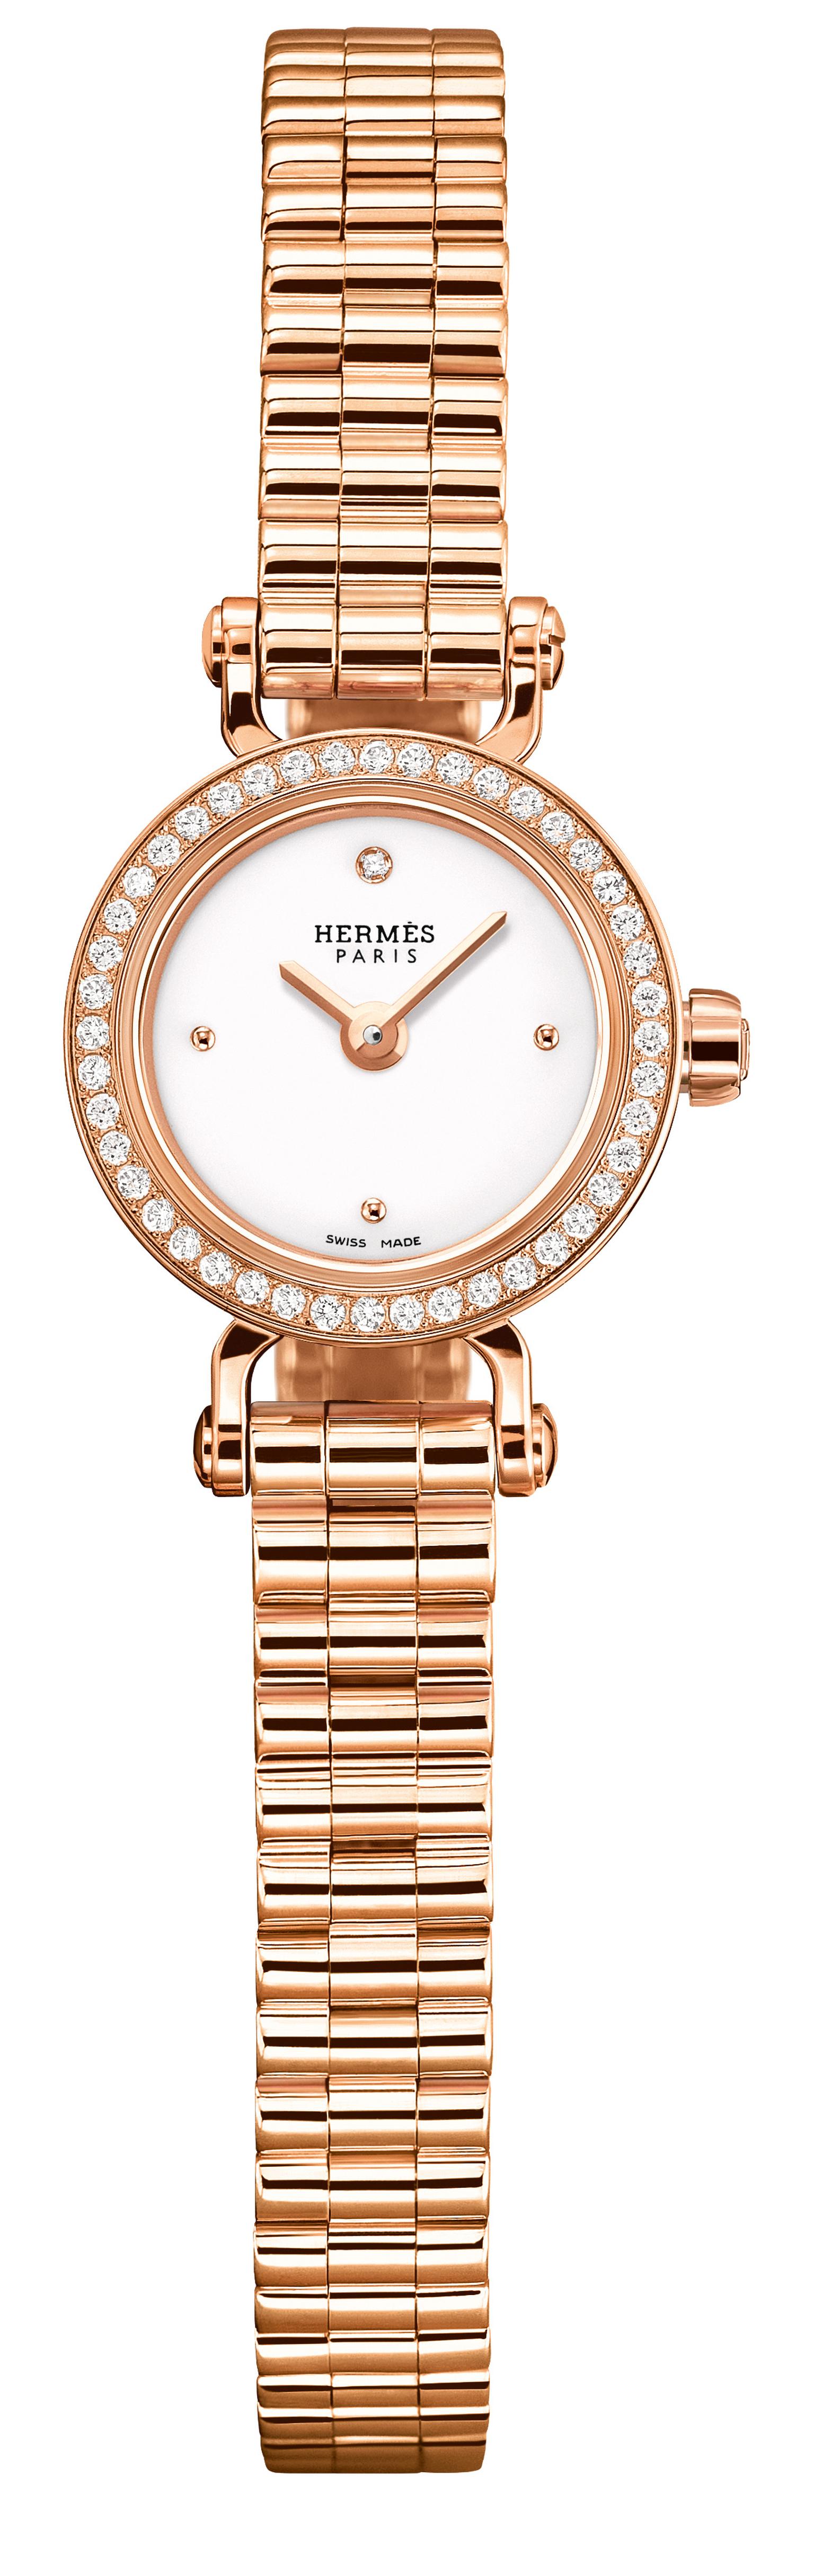 hermes gold watch ladies